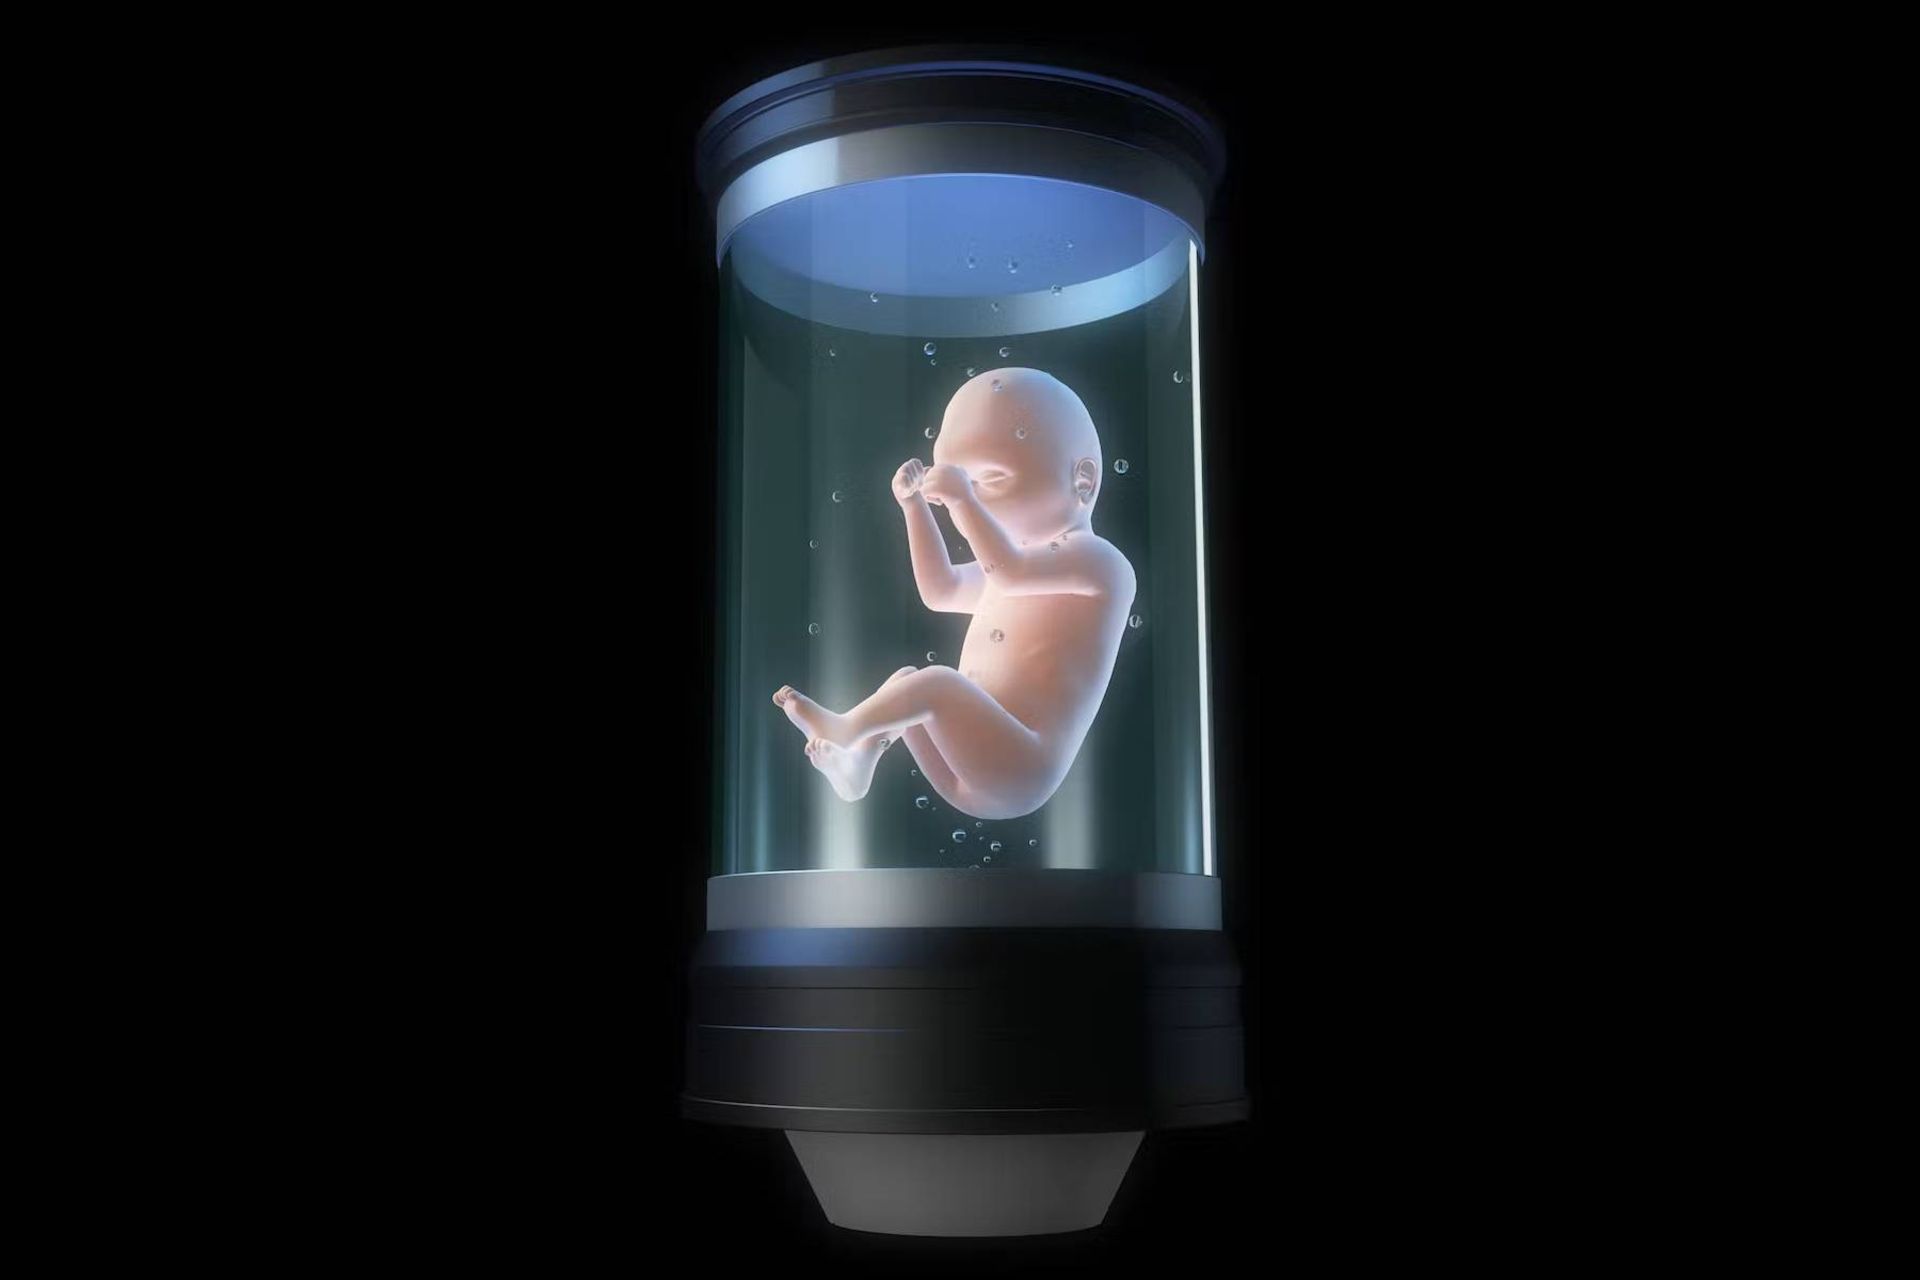 جنین انسان در شیشه / fetus